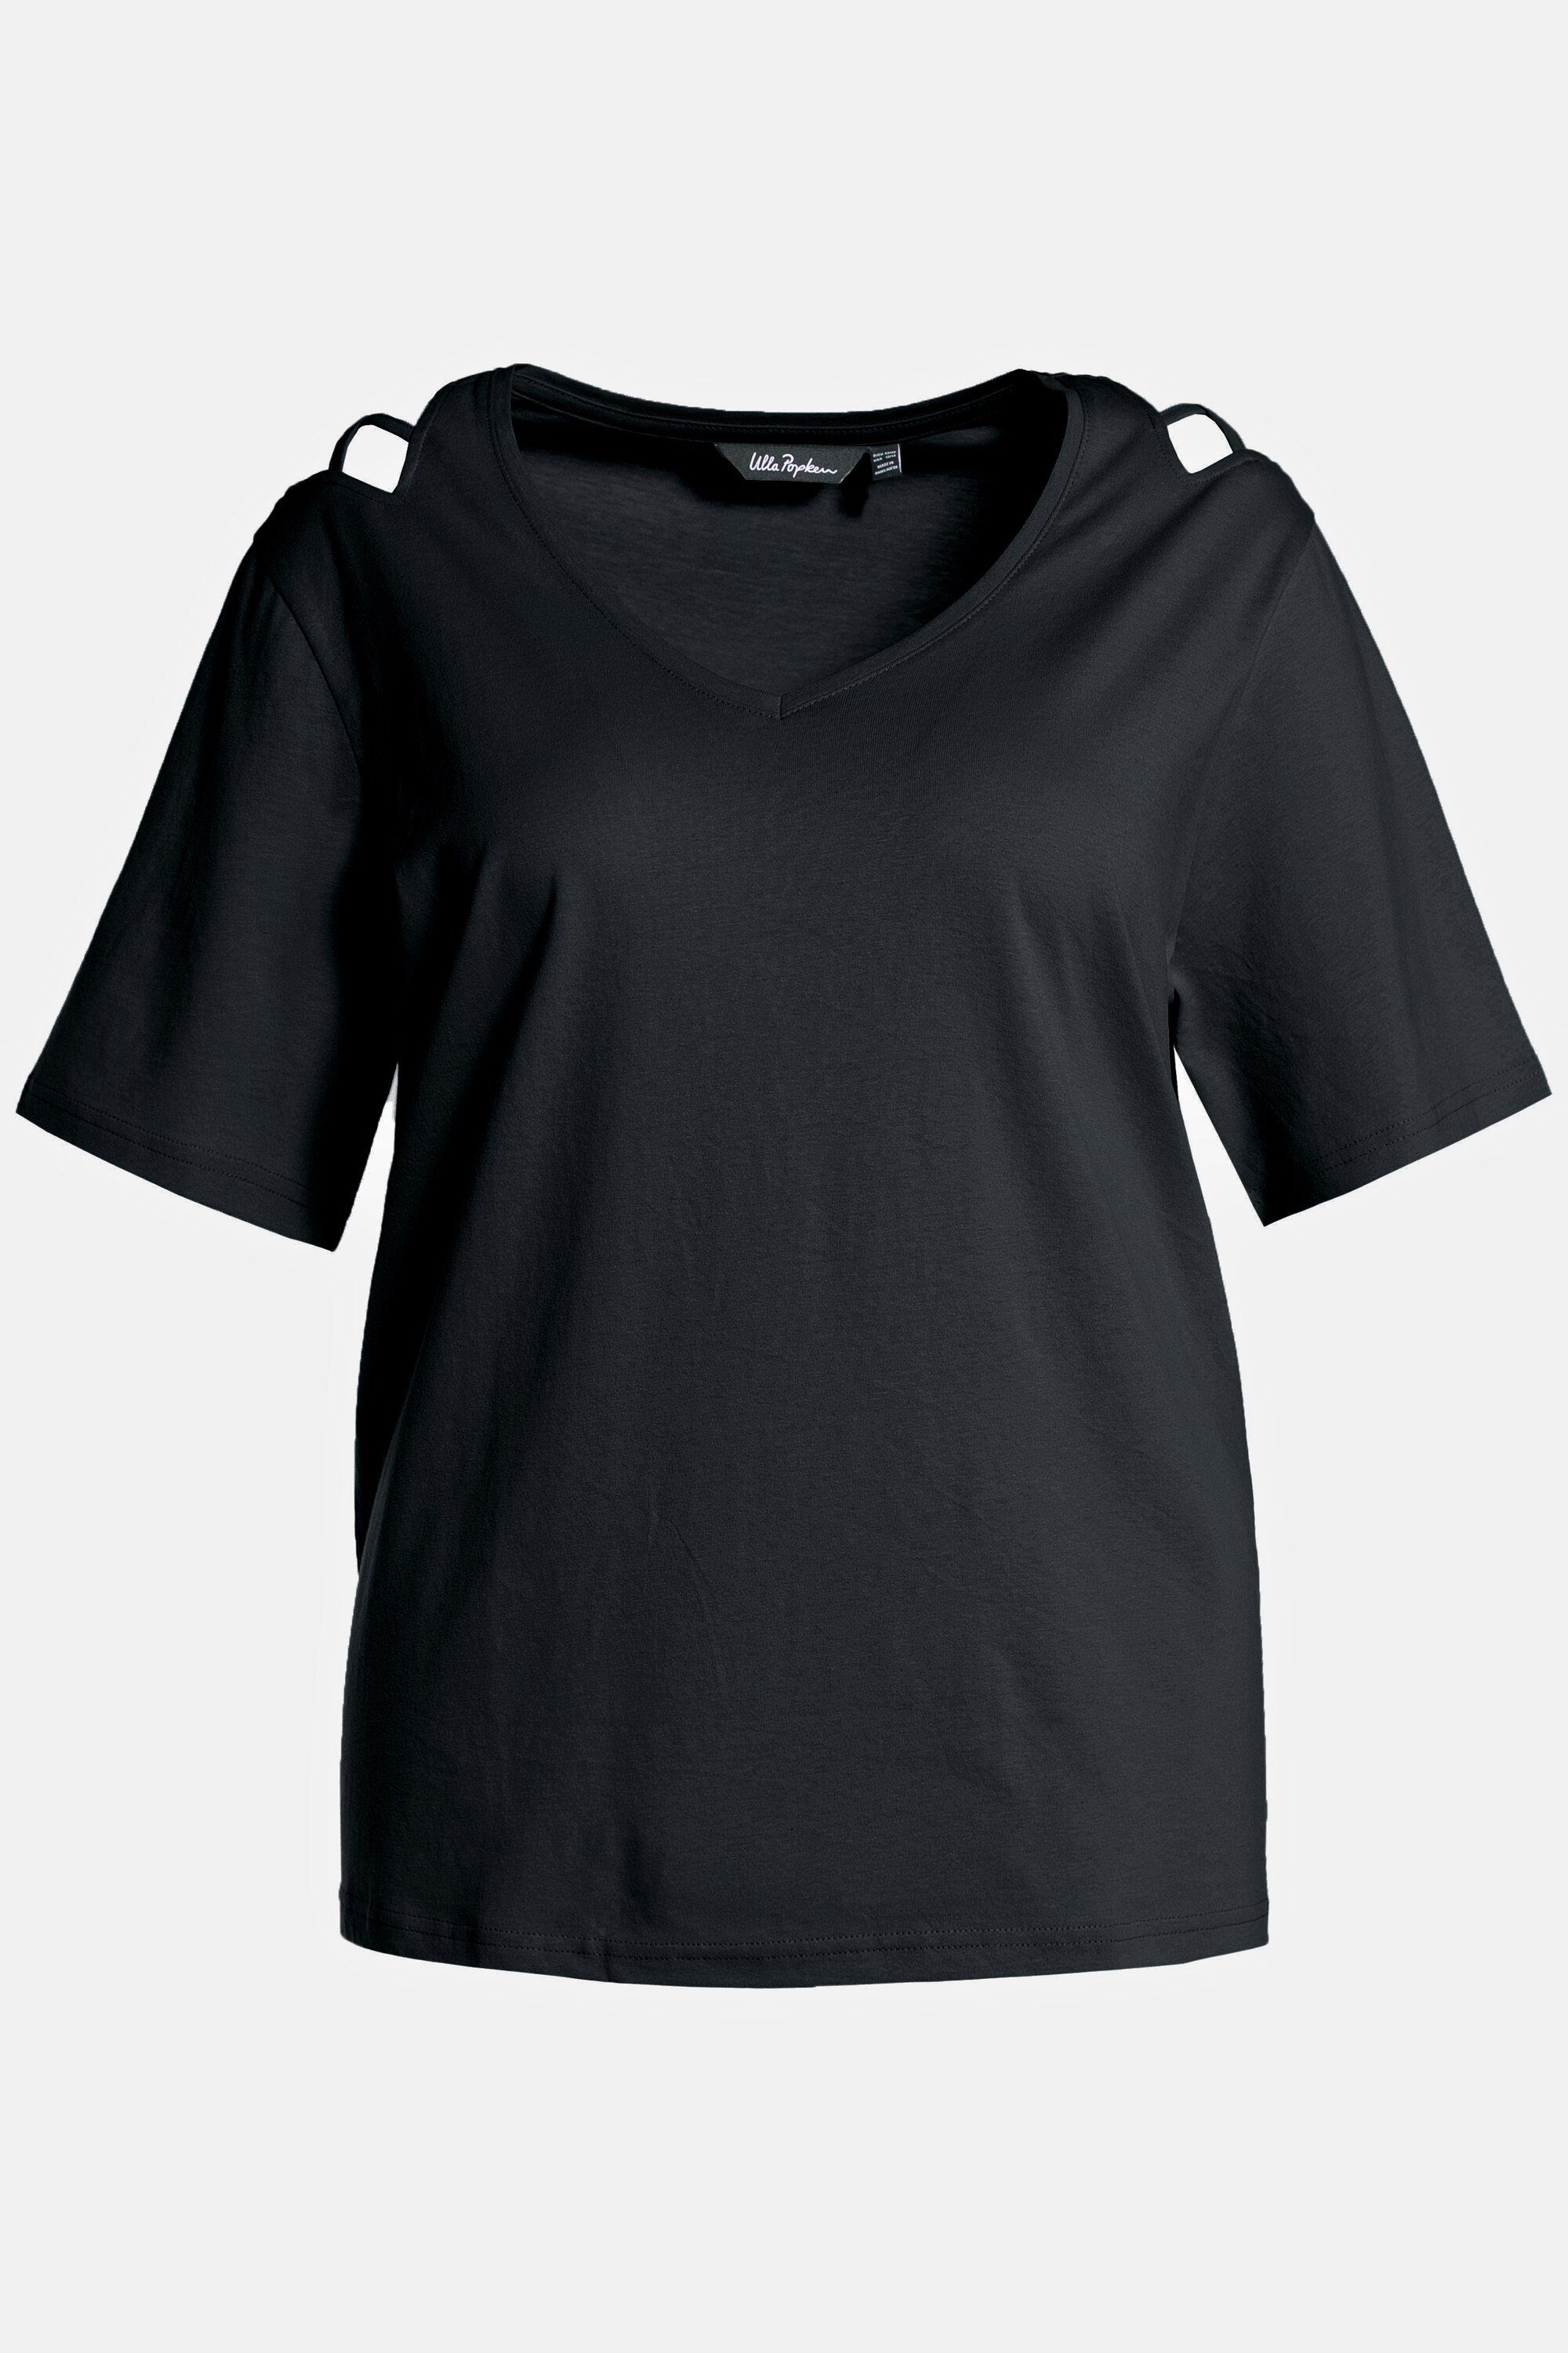 Schulterschlitze T-Shirt schwarz Popken Rundhalsshirt Halbarm V-Ausschnitt Ulla